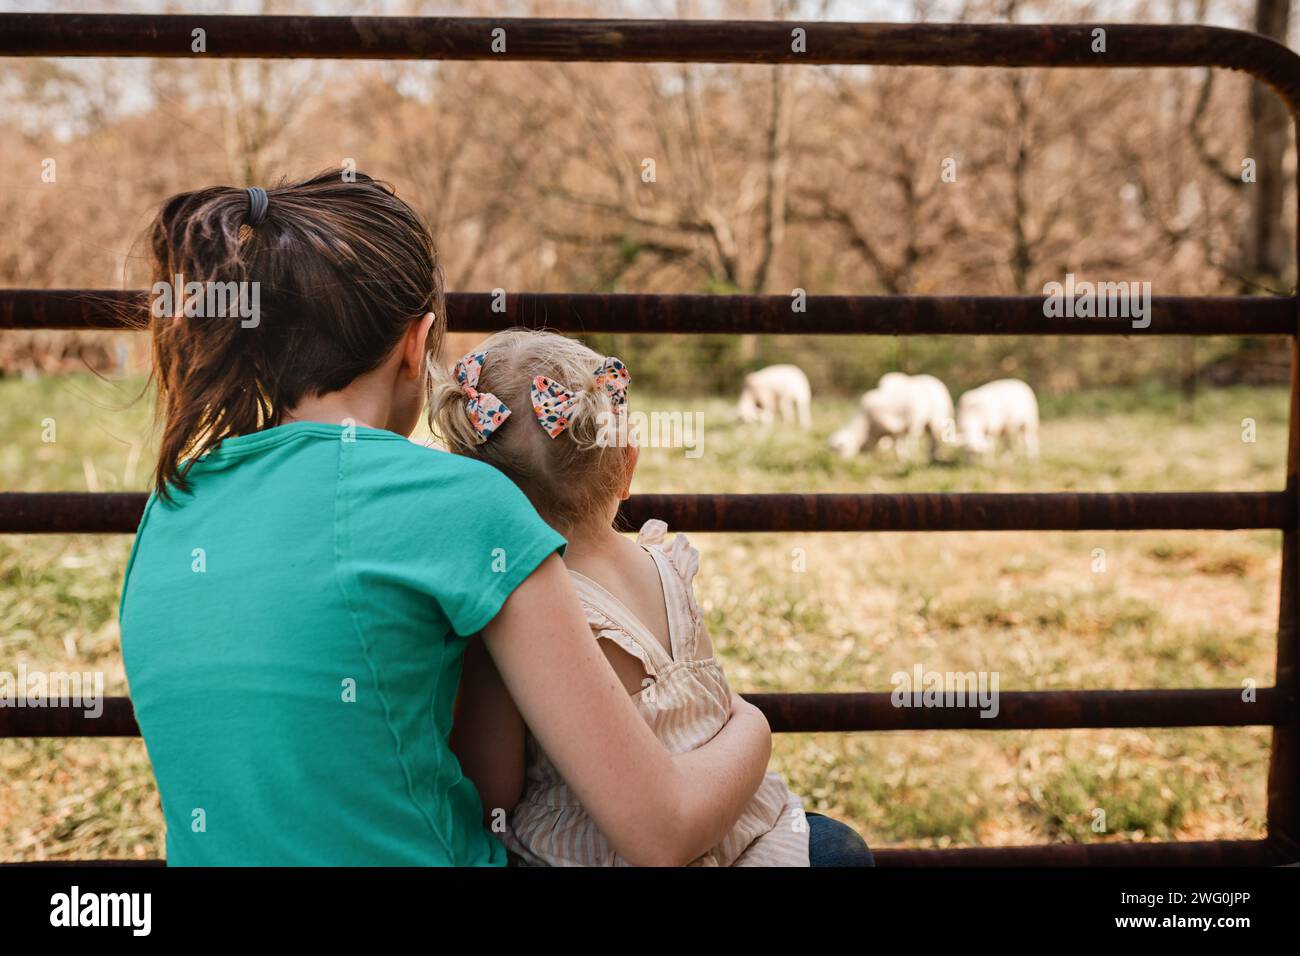 Junge Mädchen, die zusammen sitzen und Schafe auf dem Bauernhof grasen sehen Stockfoto